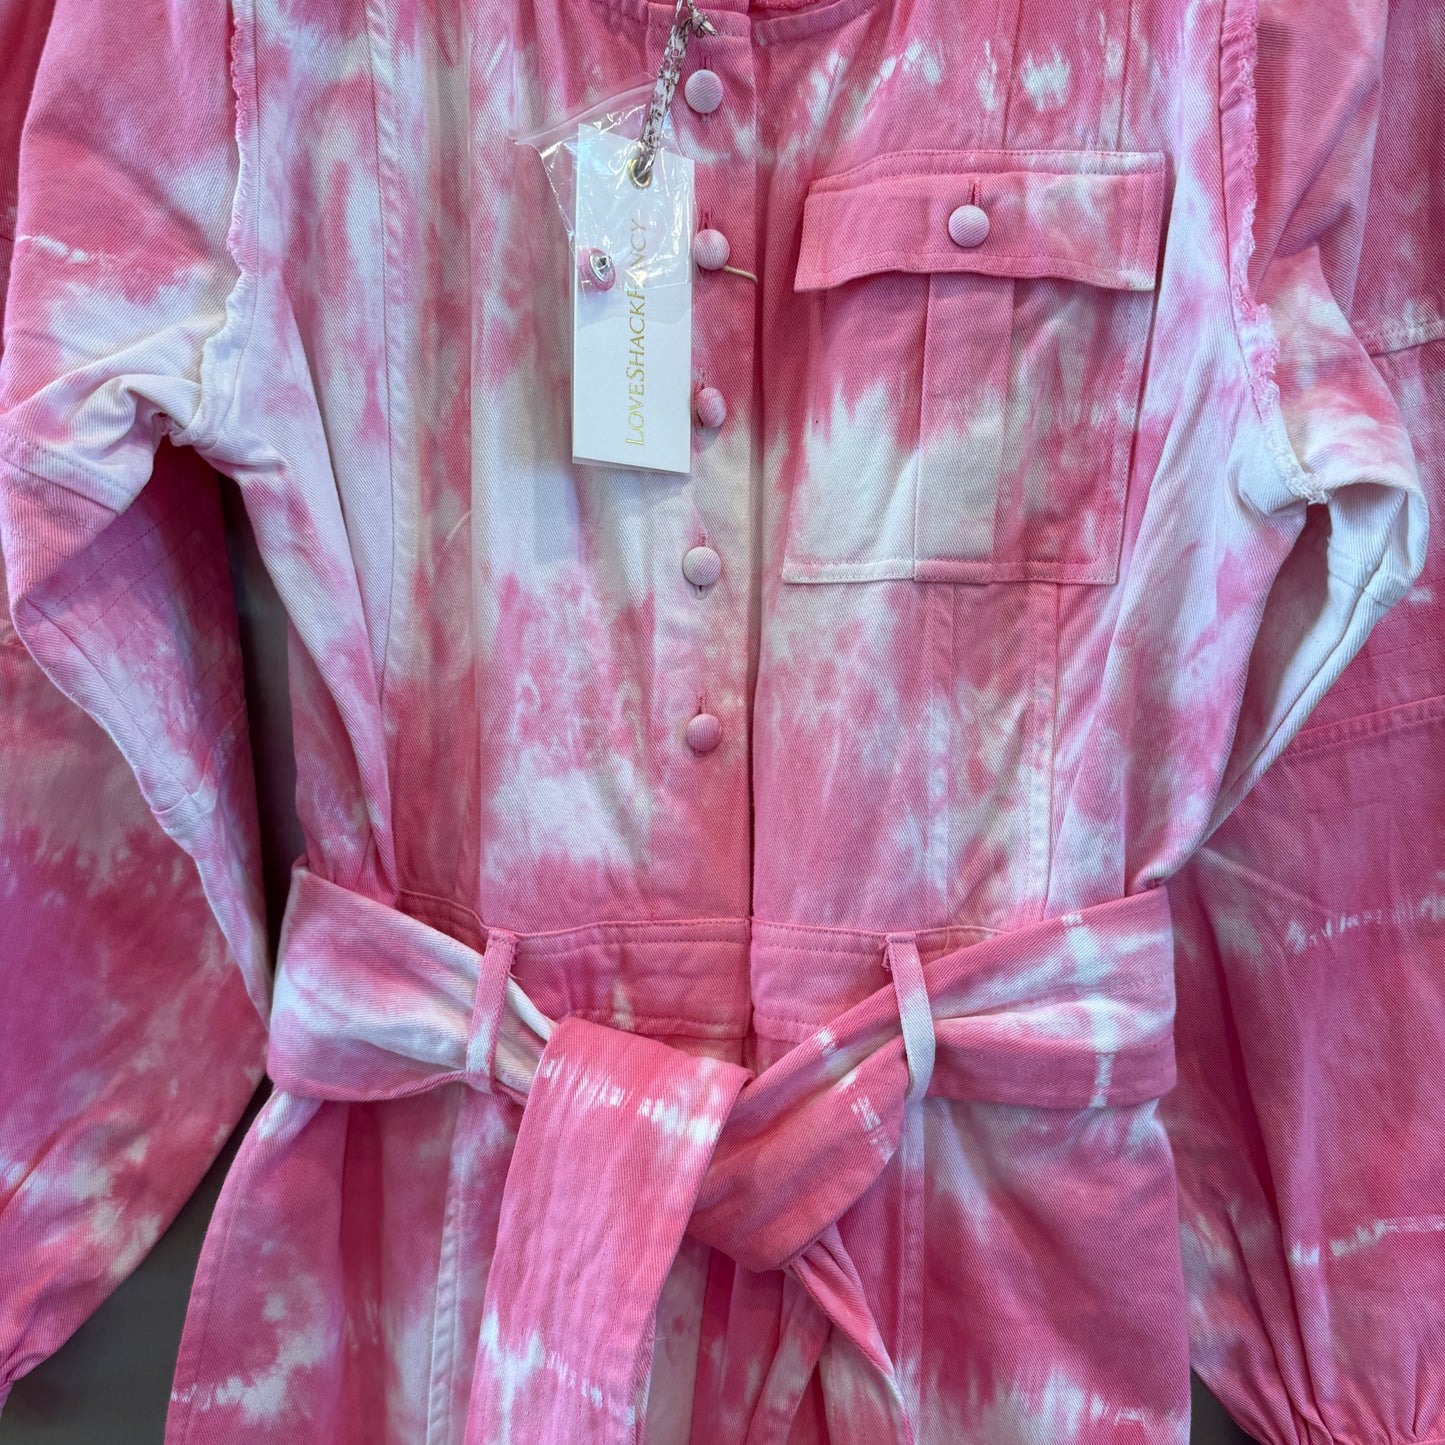 LoveShackFancy Paca Jumpsuit in Hibiscus Hand Dyed Pink white Tie-dye